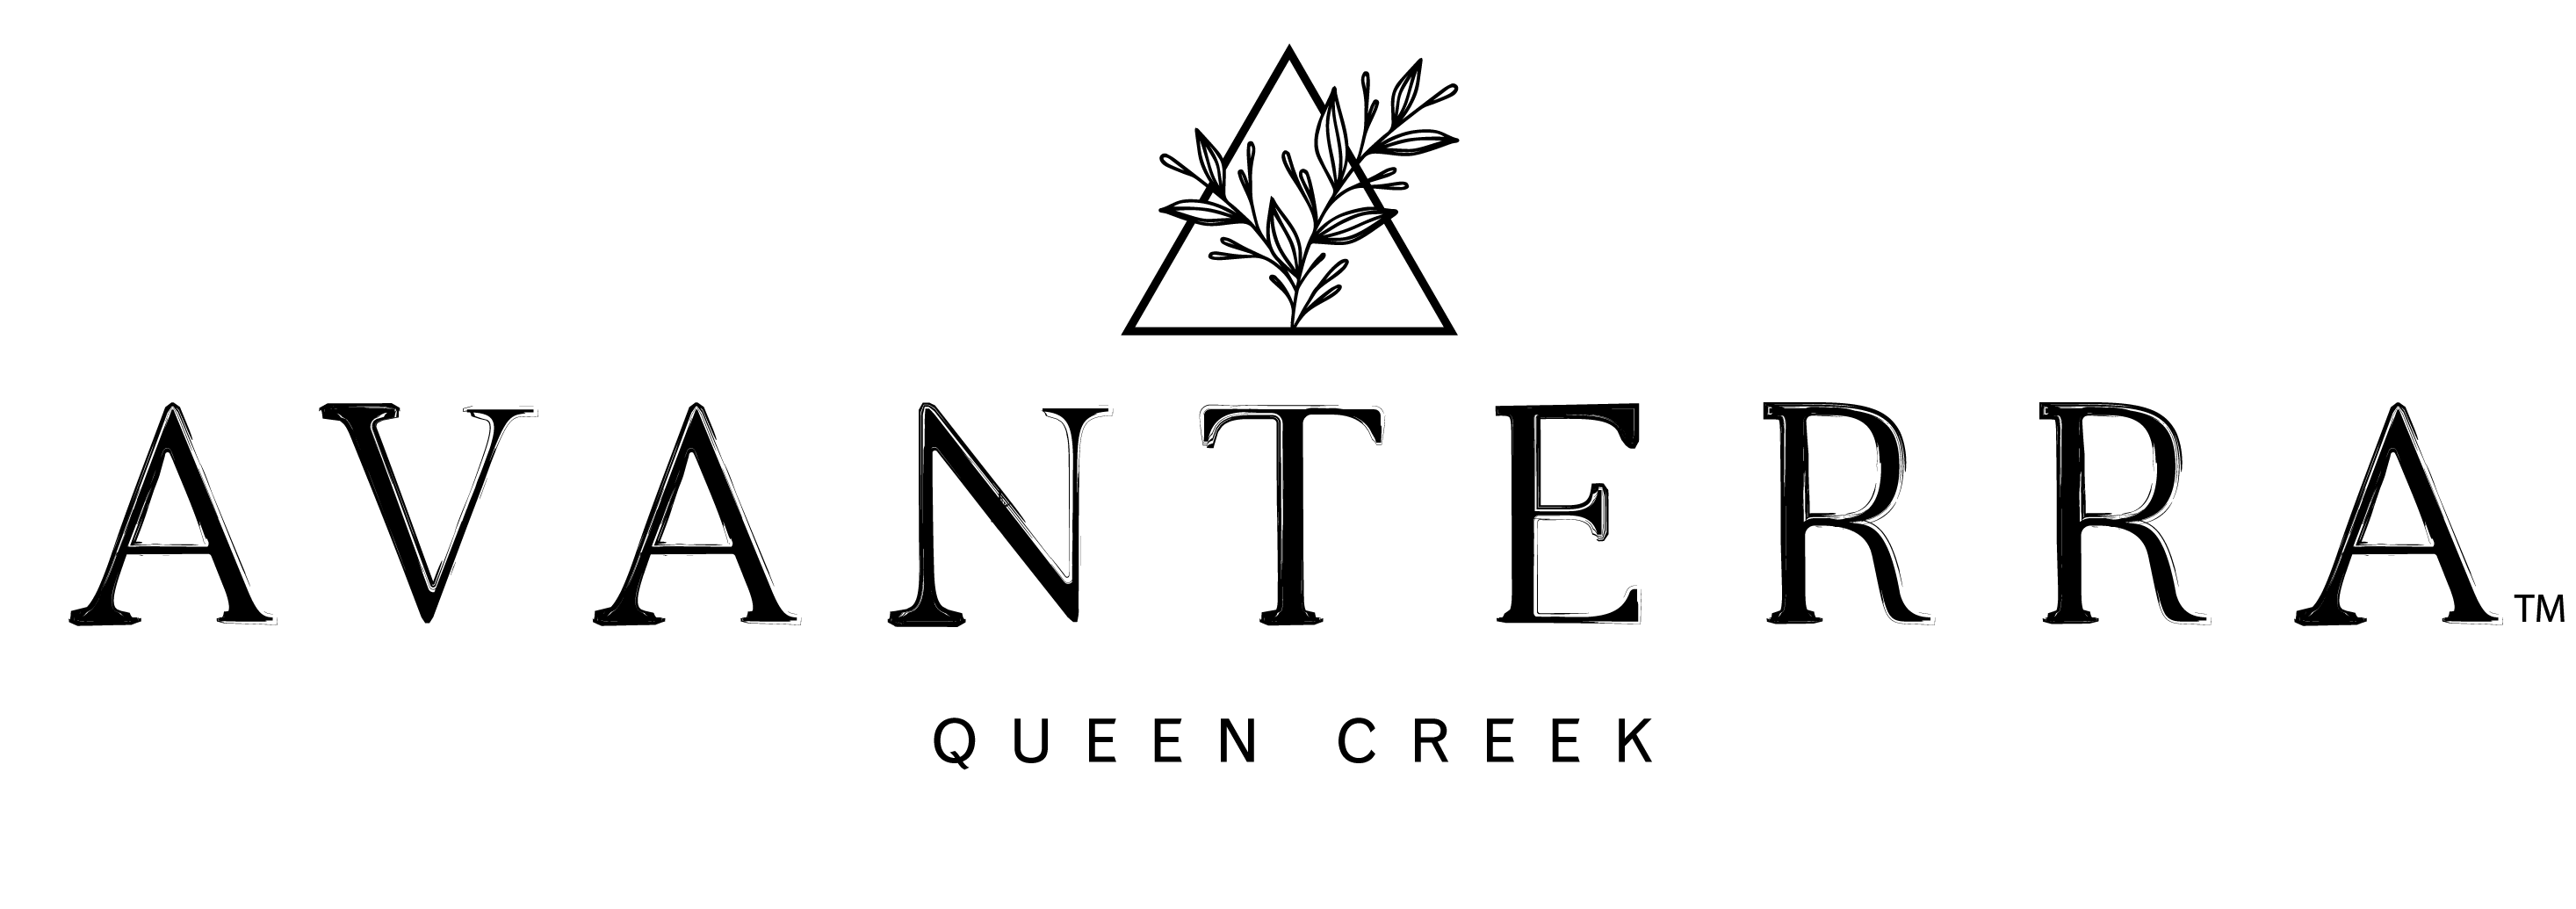 Queen-Creek-black-word-logo